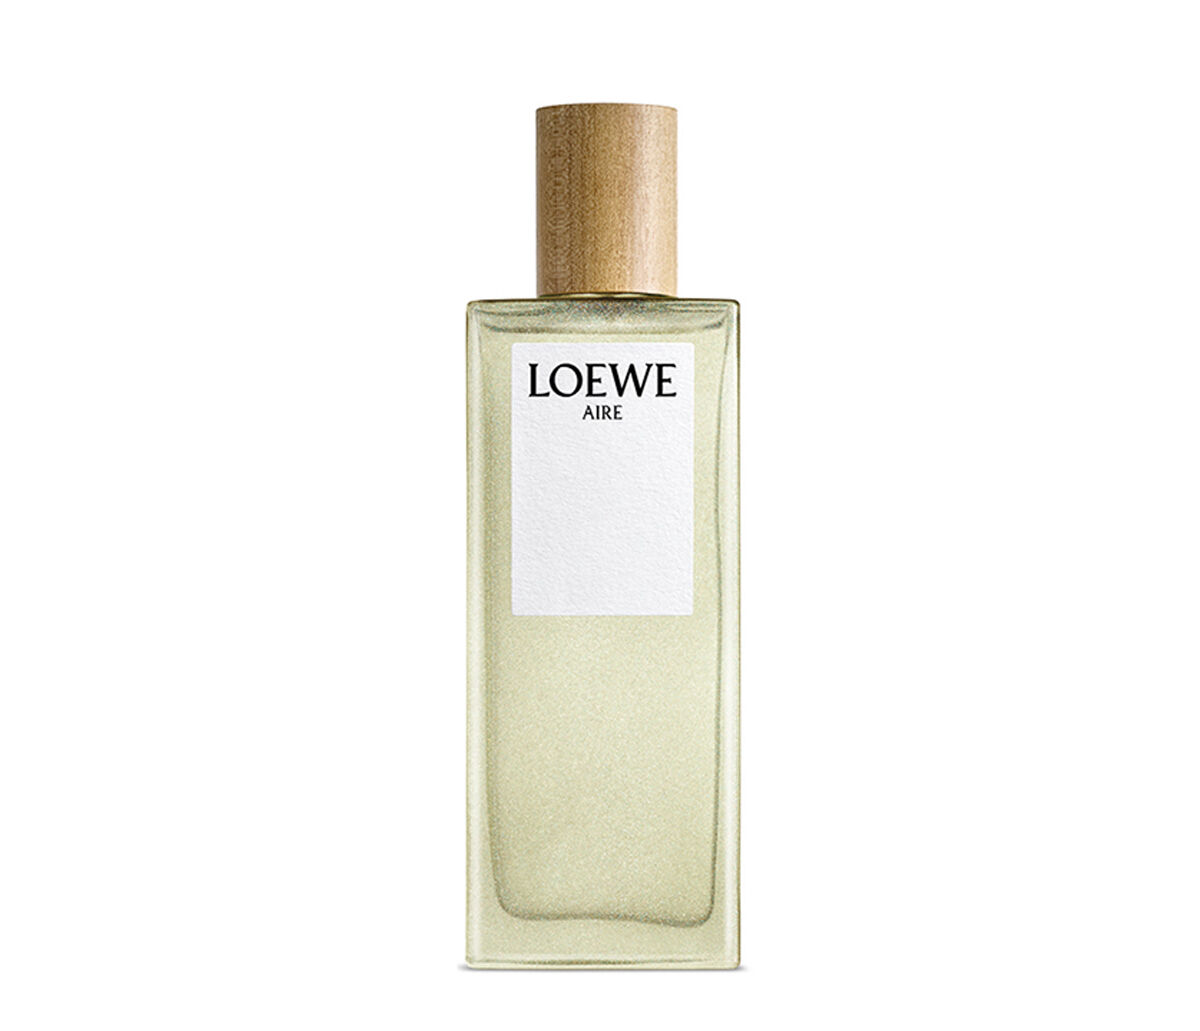 loewe perfume mens